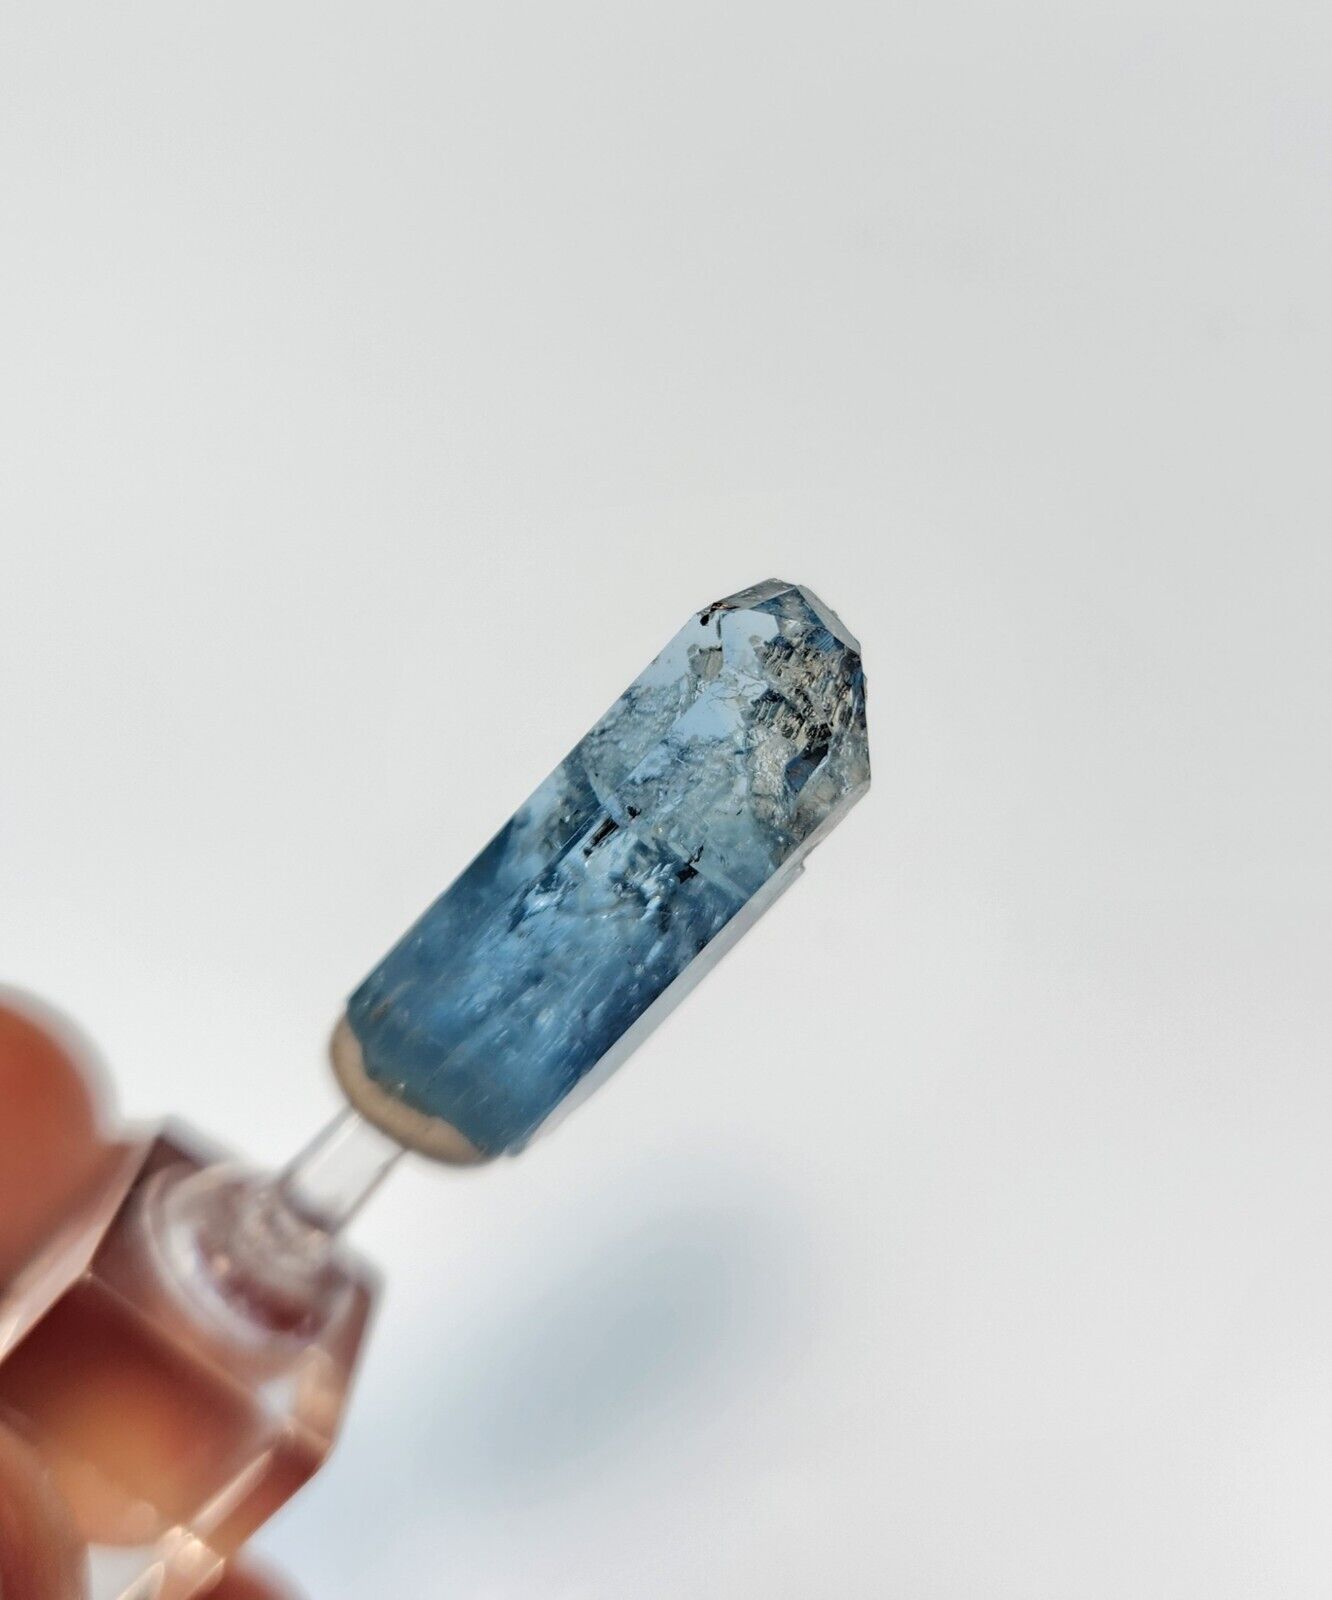 Gemmy Deep Vibrant Blue Terminated Beryl Var. Aquamarine Crystal - Vietnam 2.63g